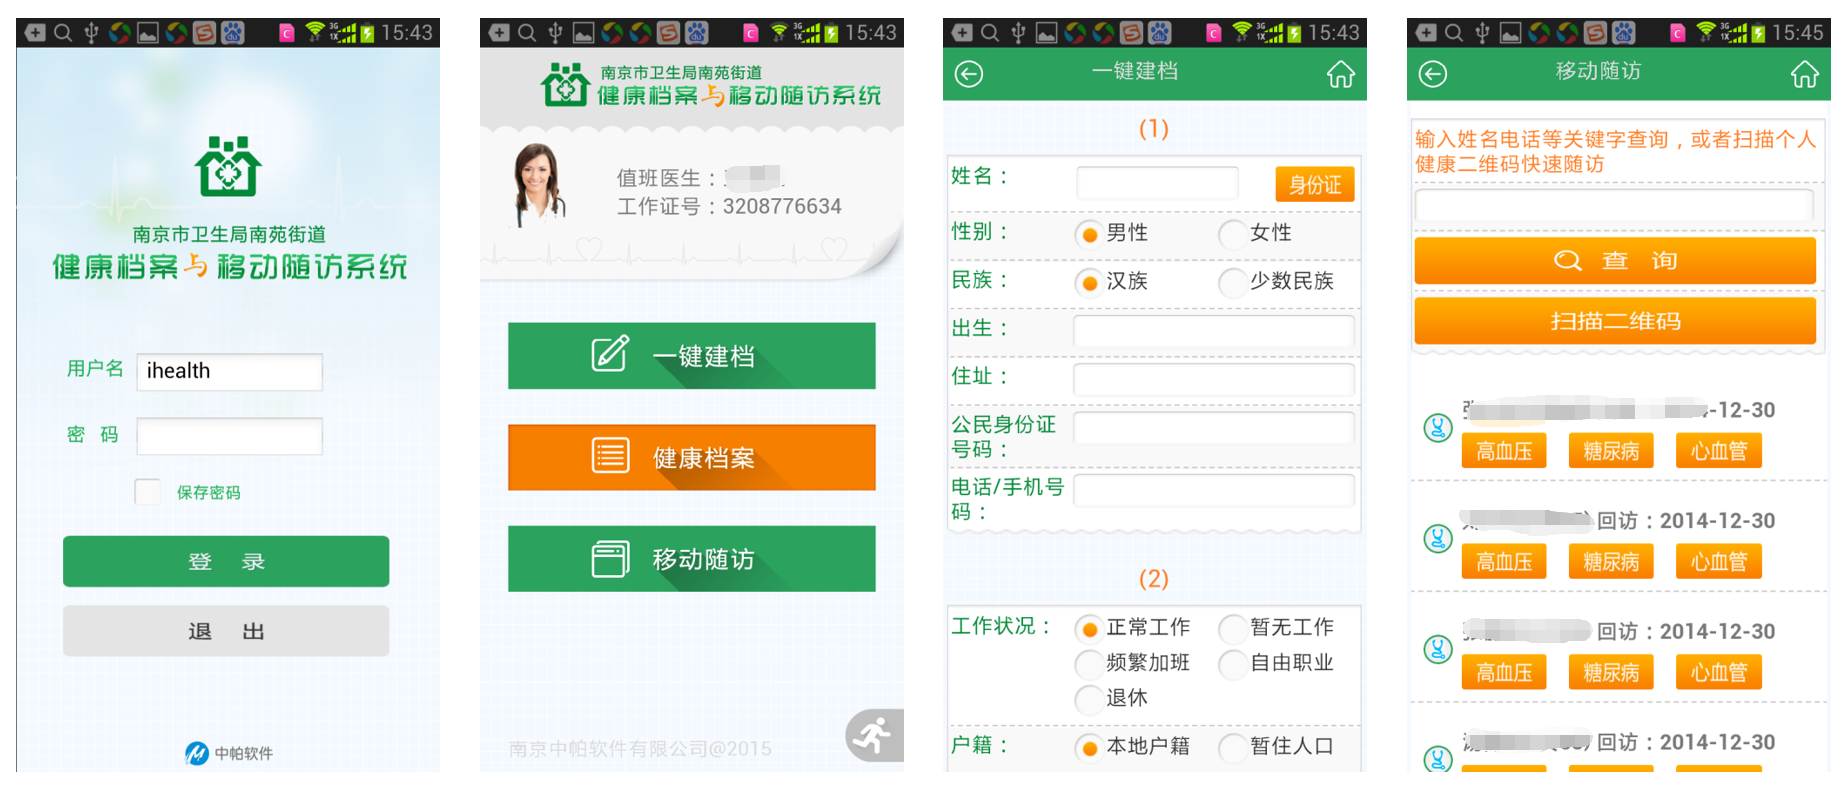 南京升阳软件技术有限公司 - mastudio移动办公开发平台